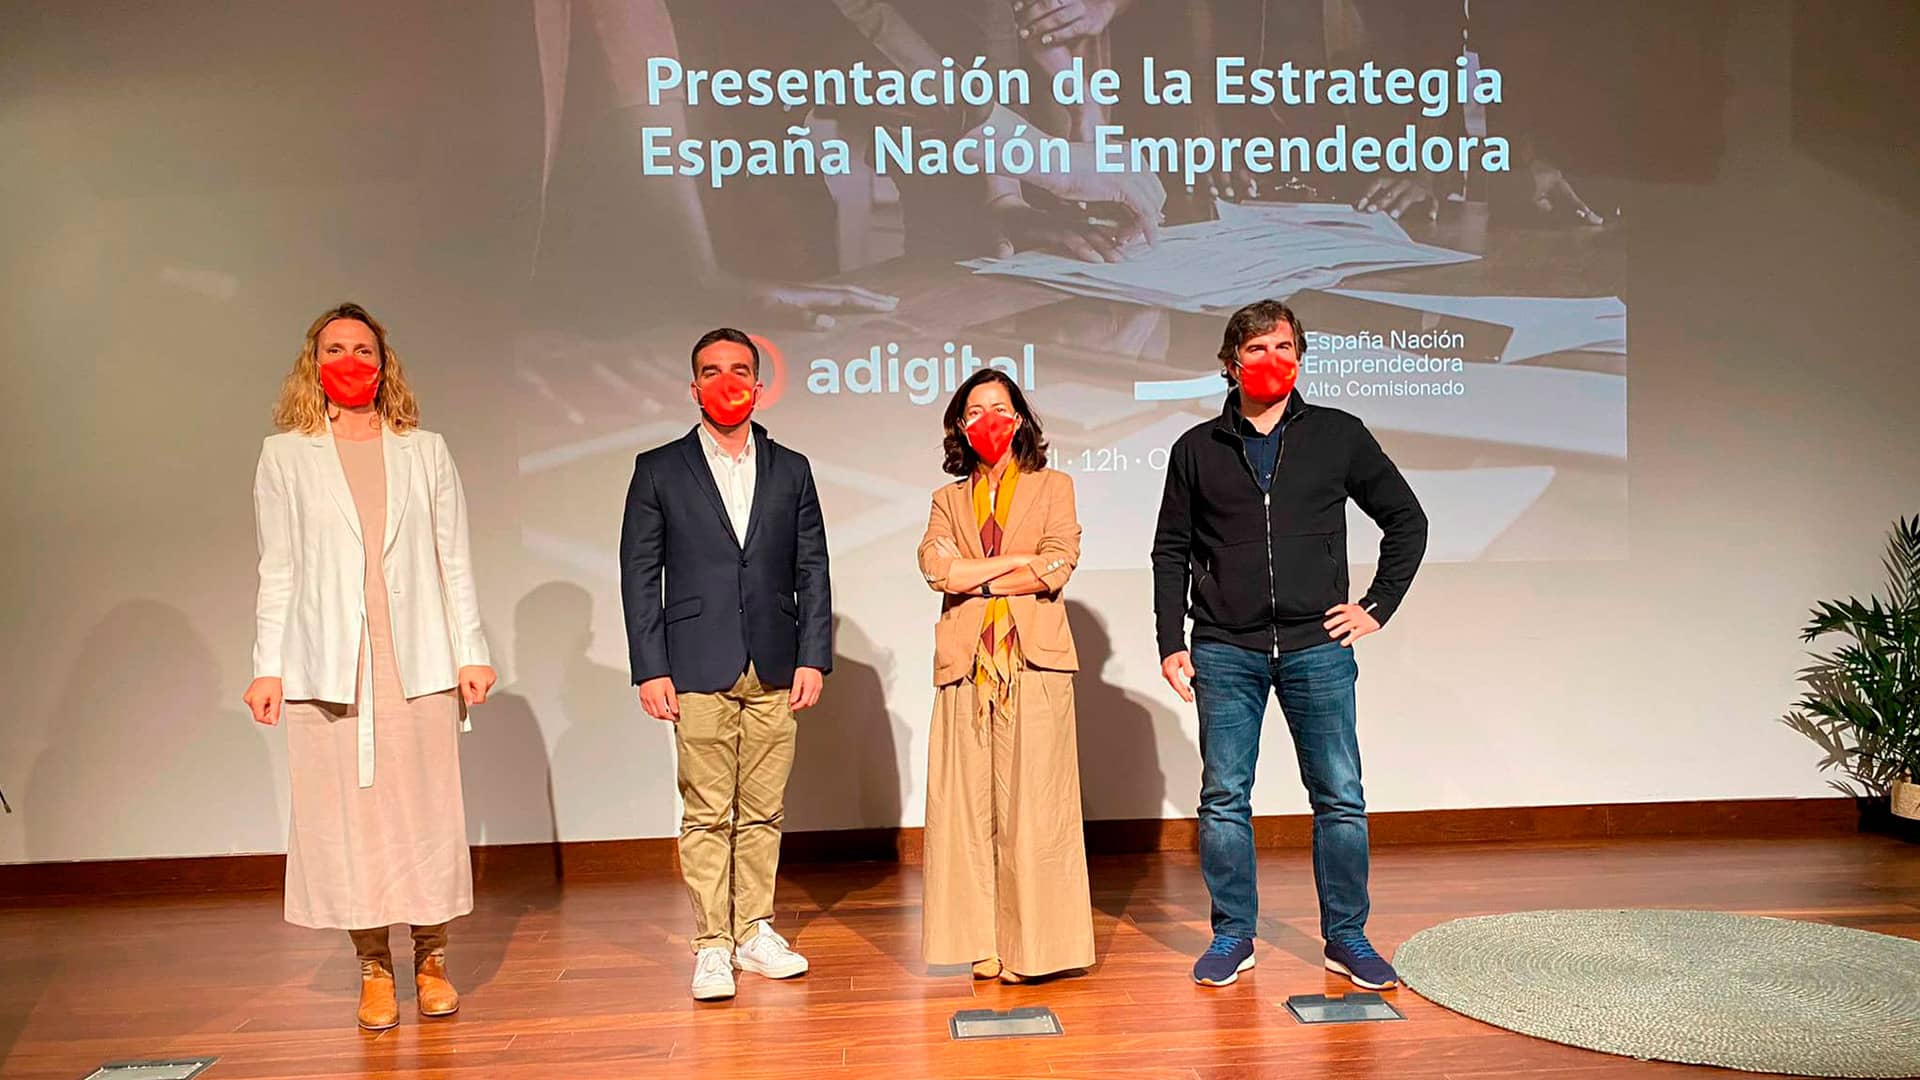 El Alto Comisionado presenta la Estrategia España Nación Emprendedora en Adigital